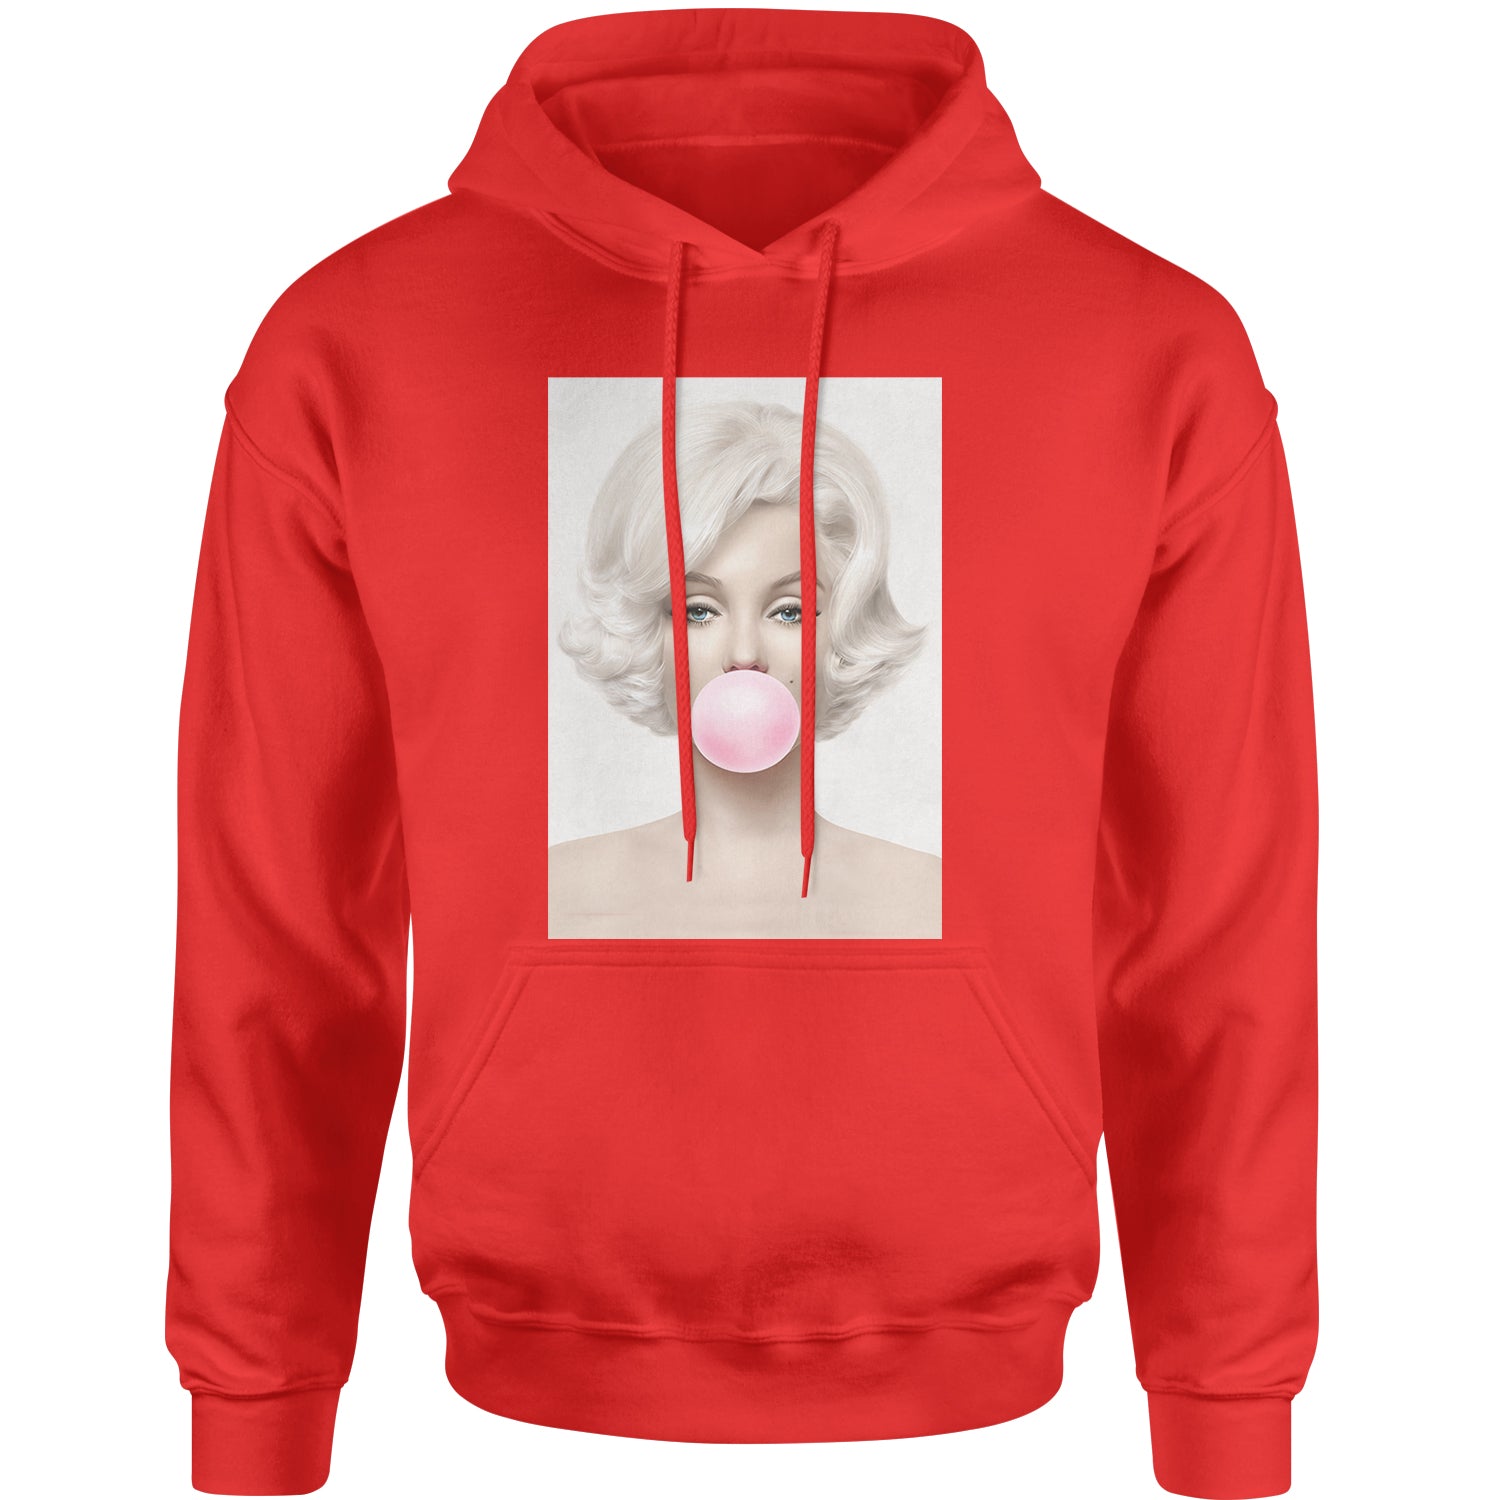 Marilyn Monroe Pink Bubble Gum Adult Hoodie Sweatshirt marilyn, monroe by Expression Tees